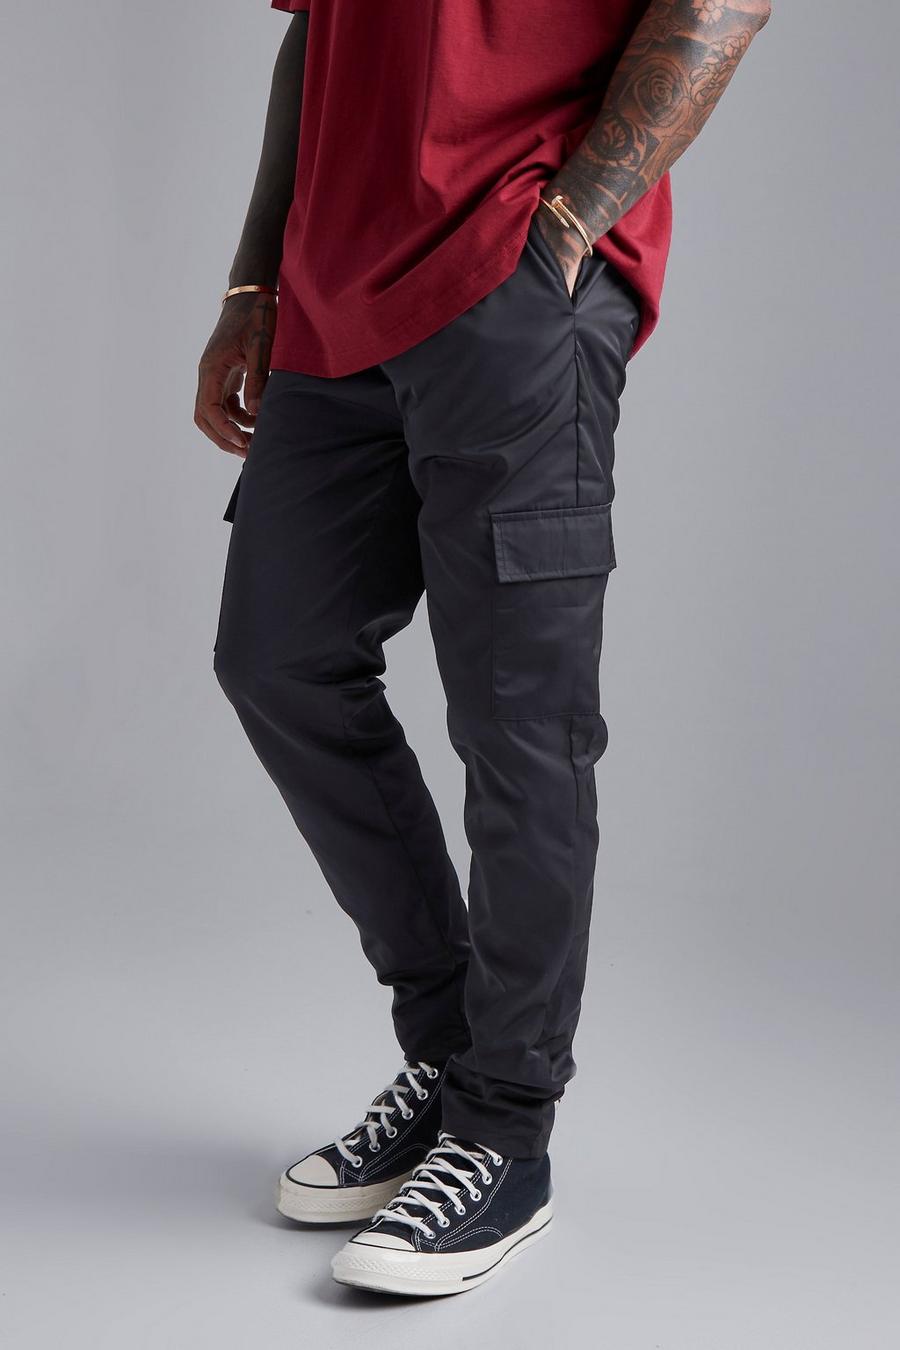 Pantaloni Cargo Smart Slim Fit con laccetti, Black negro